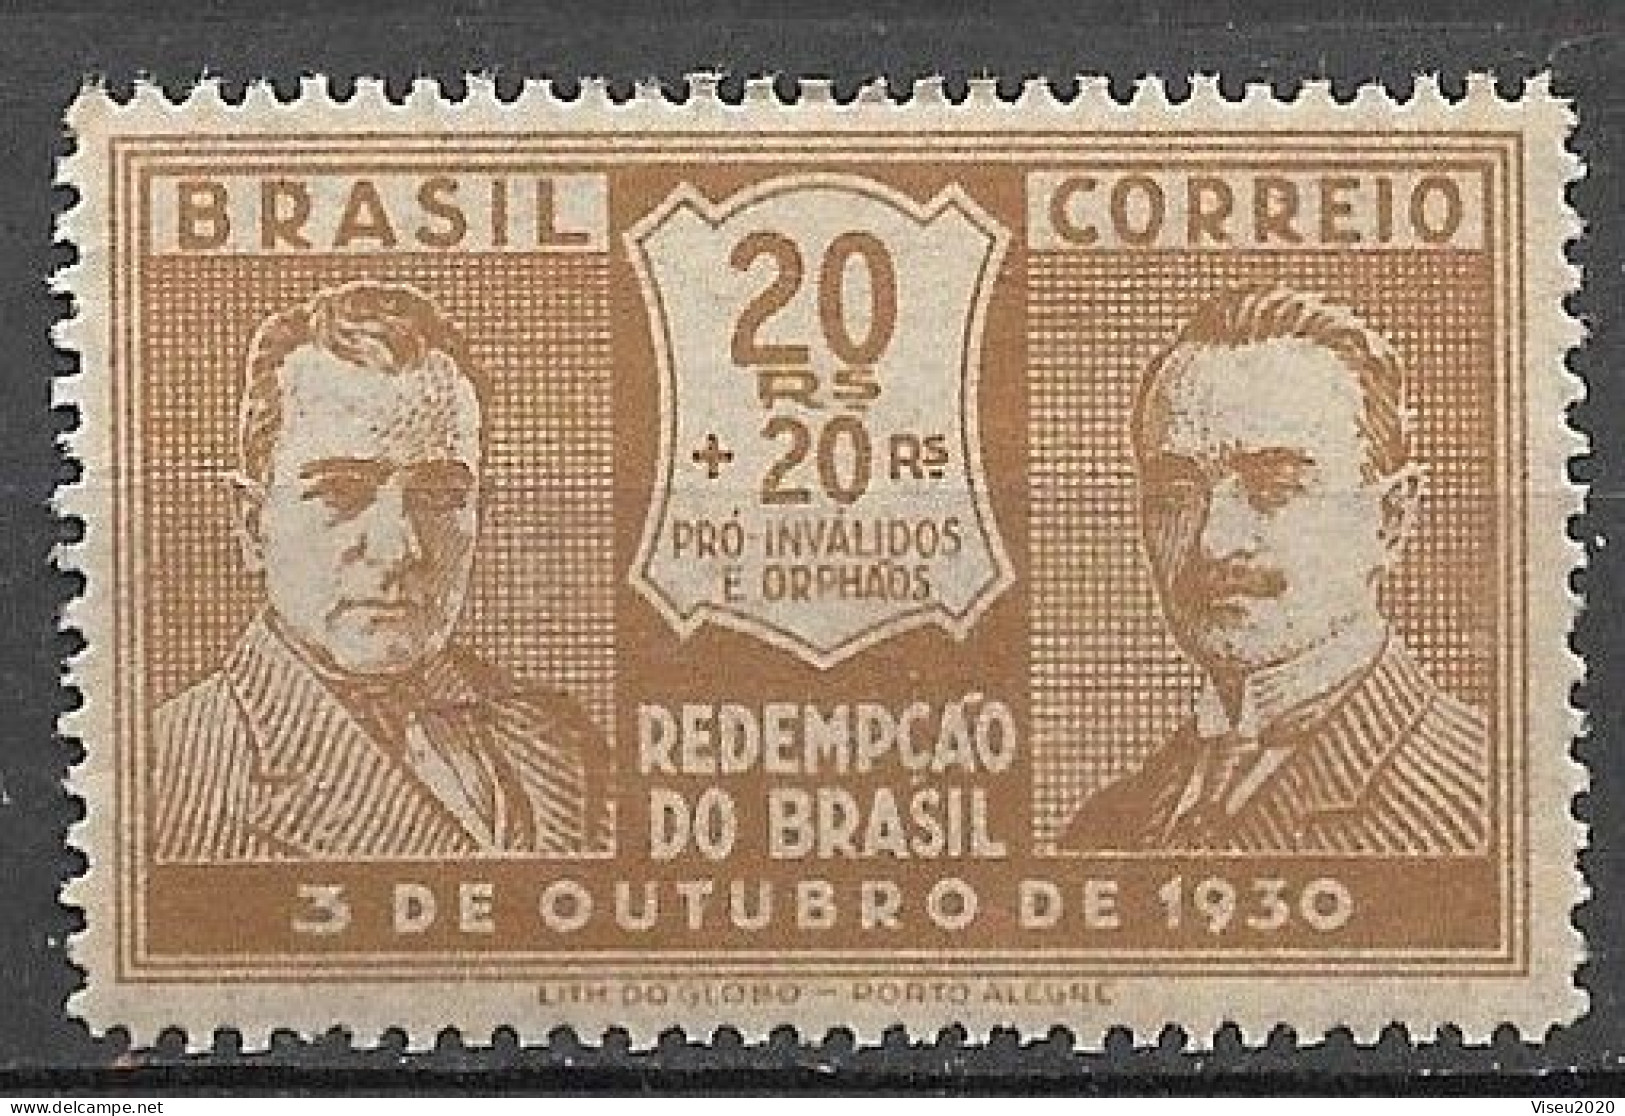 Brasil Brazil 1931 - Revolução De 03 De Outubro De 1930 - RHM C28 - Neufs